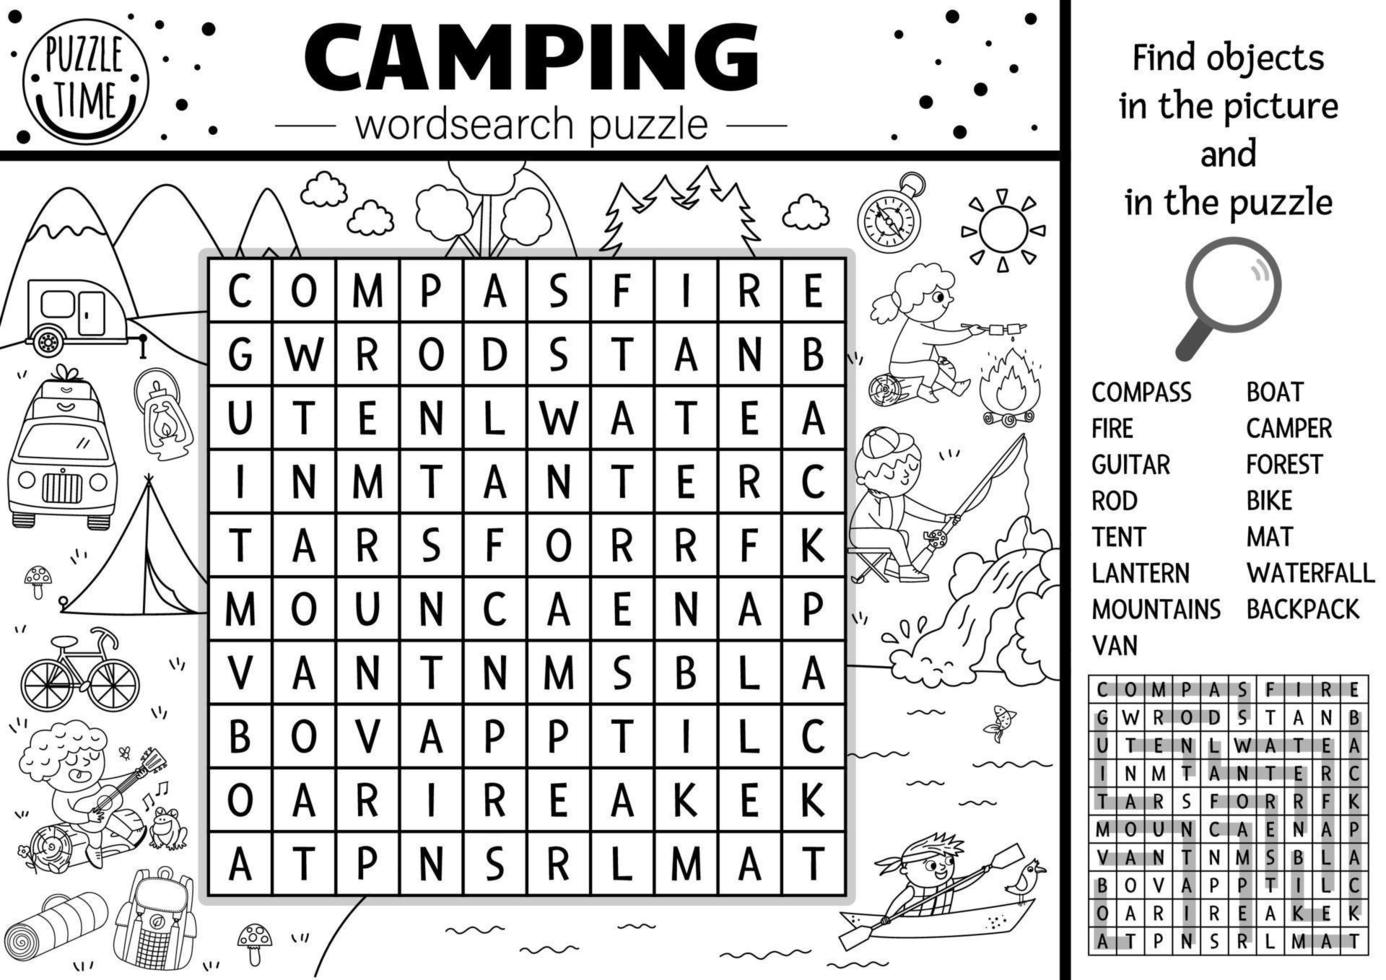 vektor svart och vit camping wordsearch pussel. enkel skog sommarläger kontur korsord eller målarbok. pedagogisk nyckelordsaktivitet med barn som fiskar, vandrar, spelar gitarr